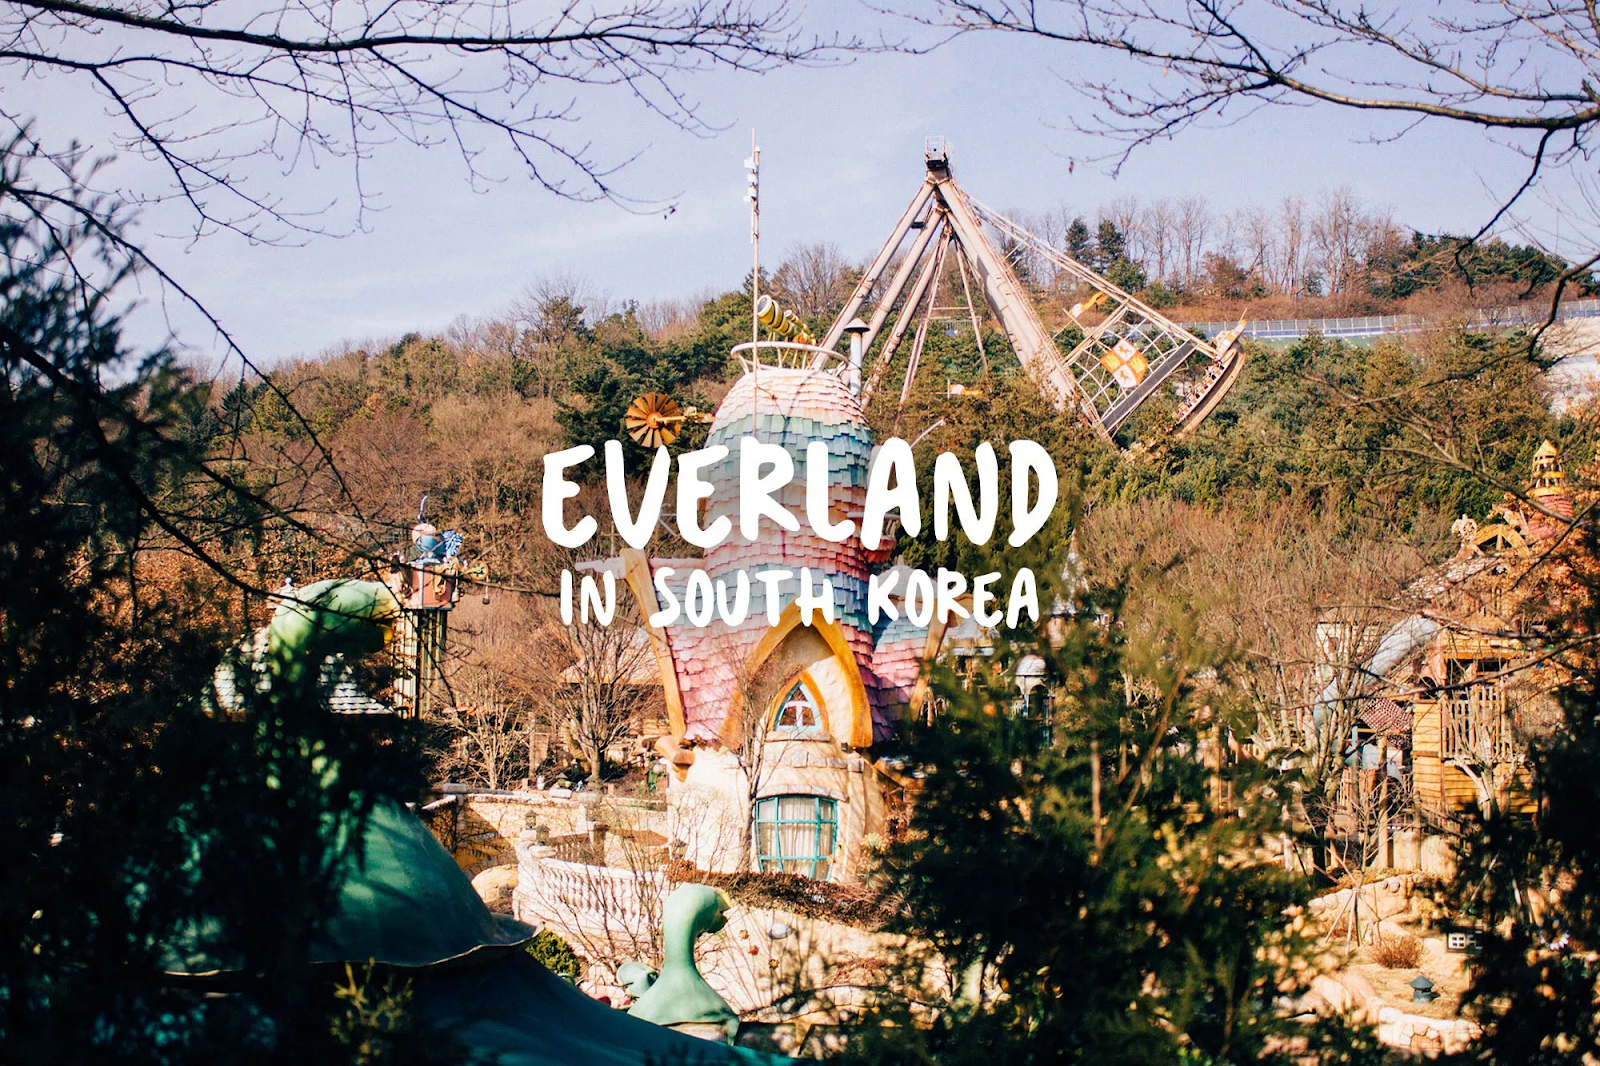 19 kinh nghiệm đi Everland Hàn Quốc khám phá hết 5 khu vui chơi | Thetips.vn - Cập nhật tin tức, mẹo hay, toplist những tips hay 24h